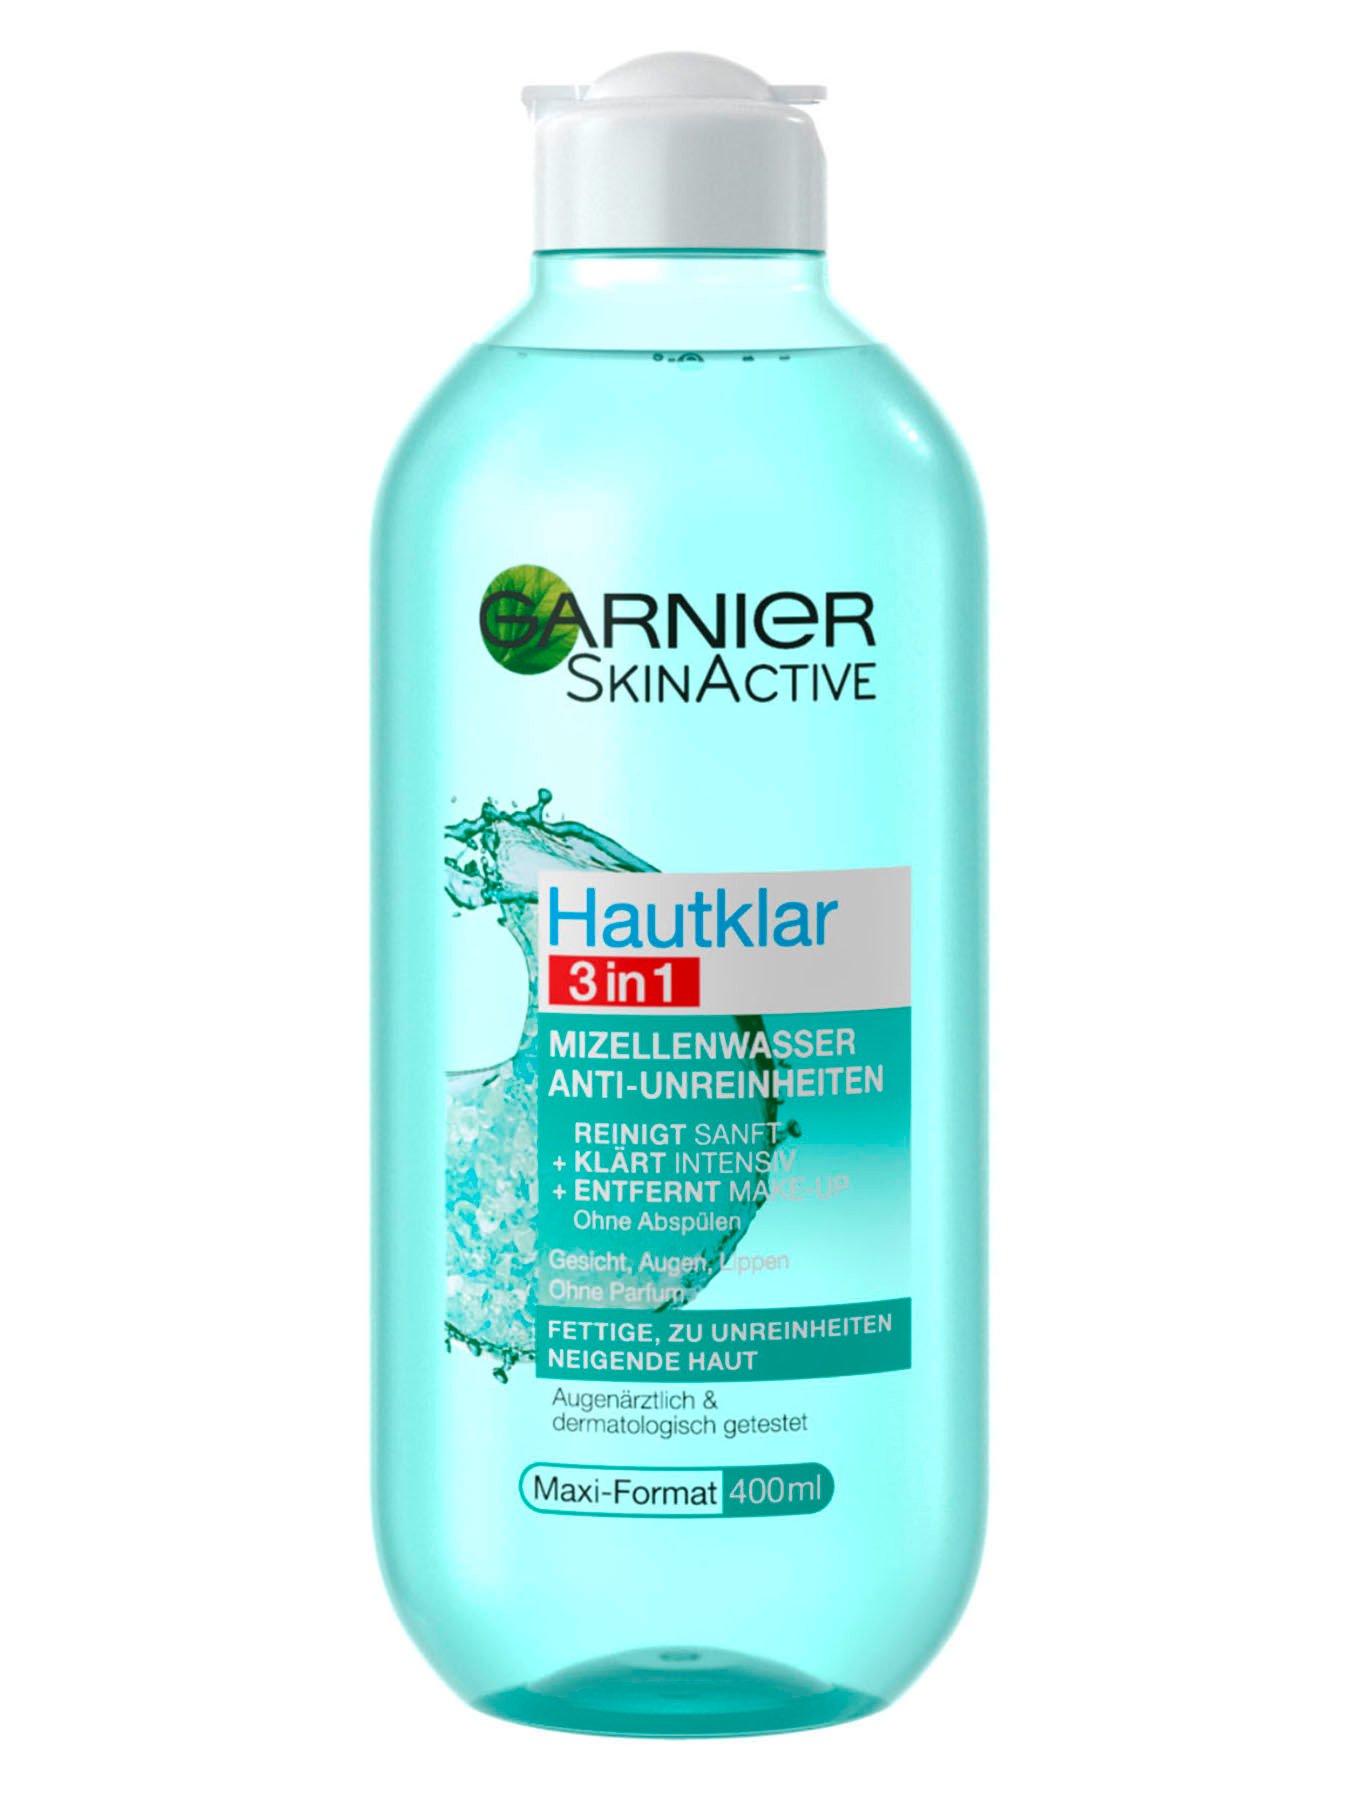 | Mizellenwasser Hautklar Anti-Unreinheiten 3in1 Garnier